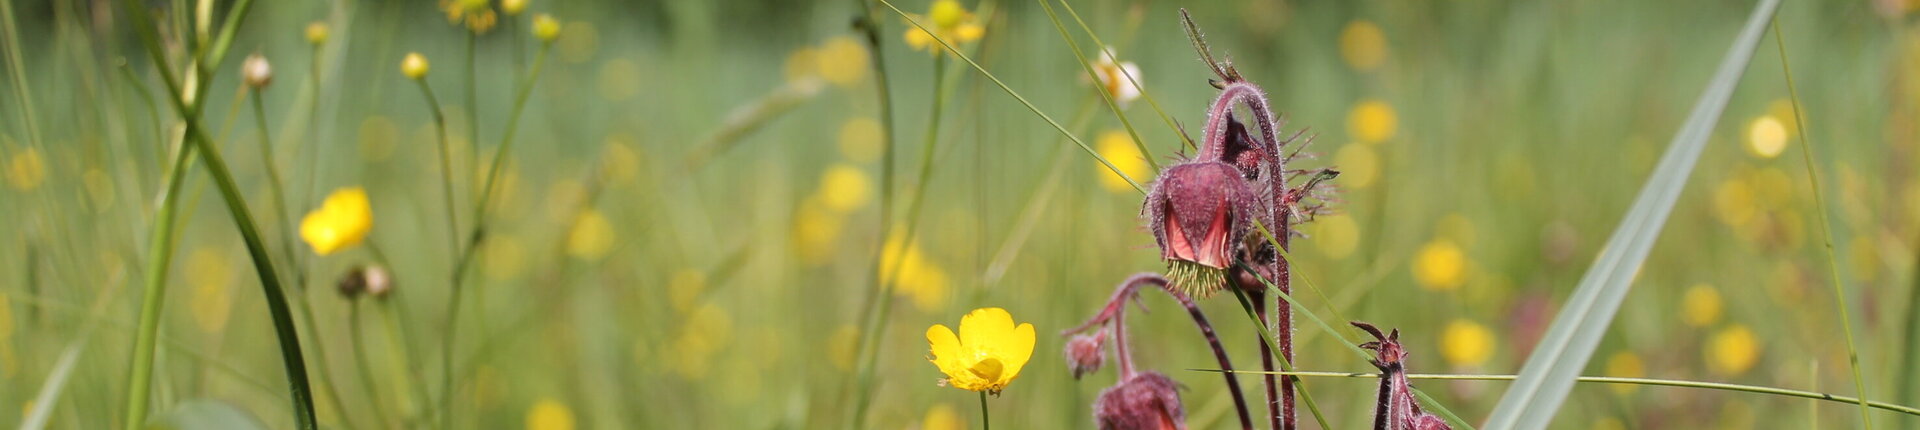 Blütenpracht im Bollwinfließ, Naturschutzgebiet Schorfheide-Chorin